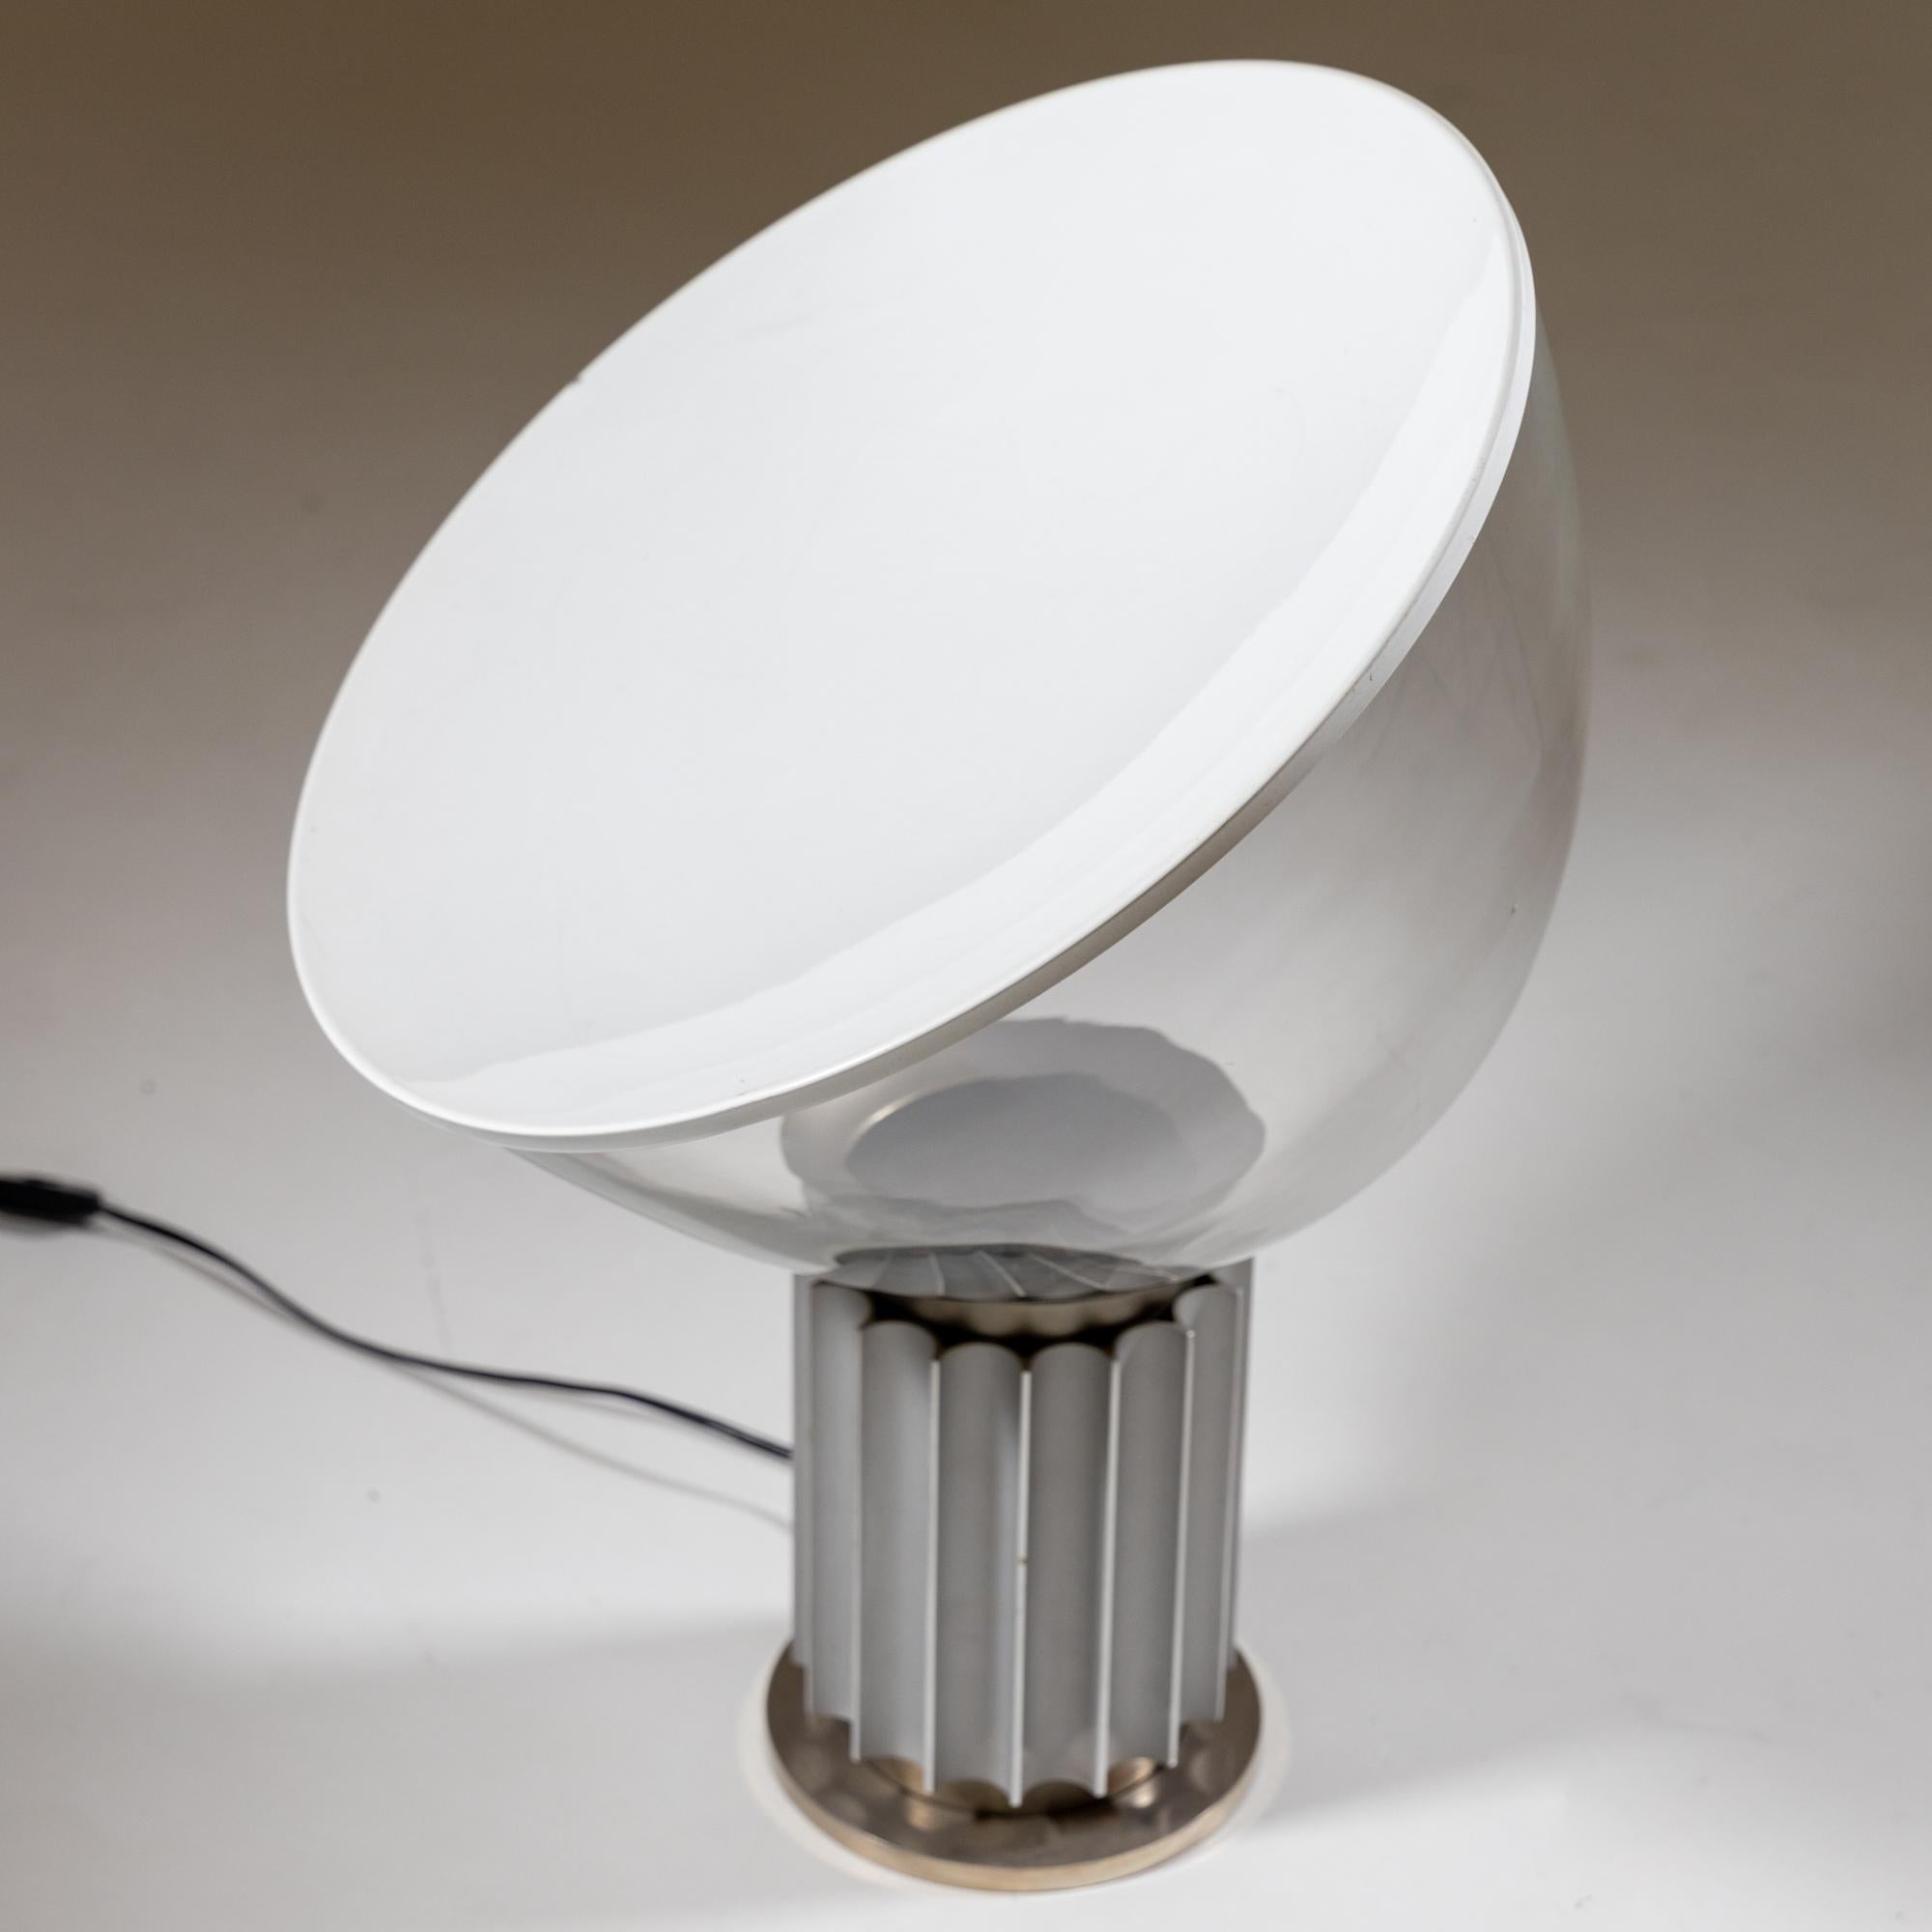 Lampe de table modèle Taccia, qui a été conçue par Achille et Pier Giacomo Castiglioni pour Flos dans les années 1960. La lampe repose sur une base ronde cannelée, sur laquelle est posé en biais le grand abat-jour en verre avec un disque concave